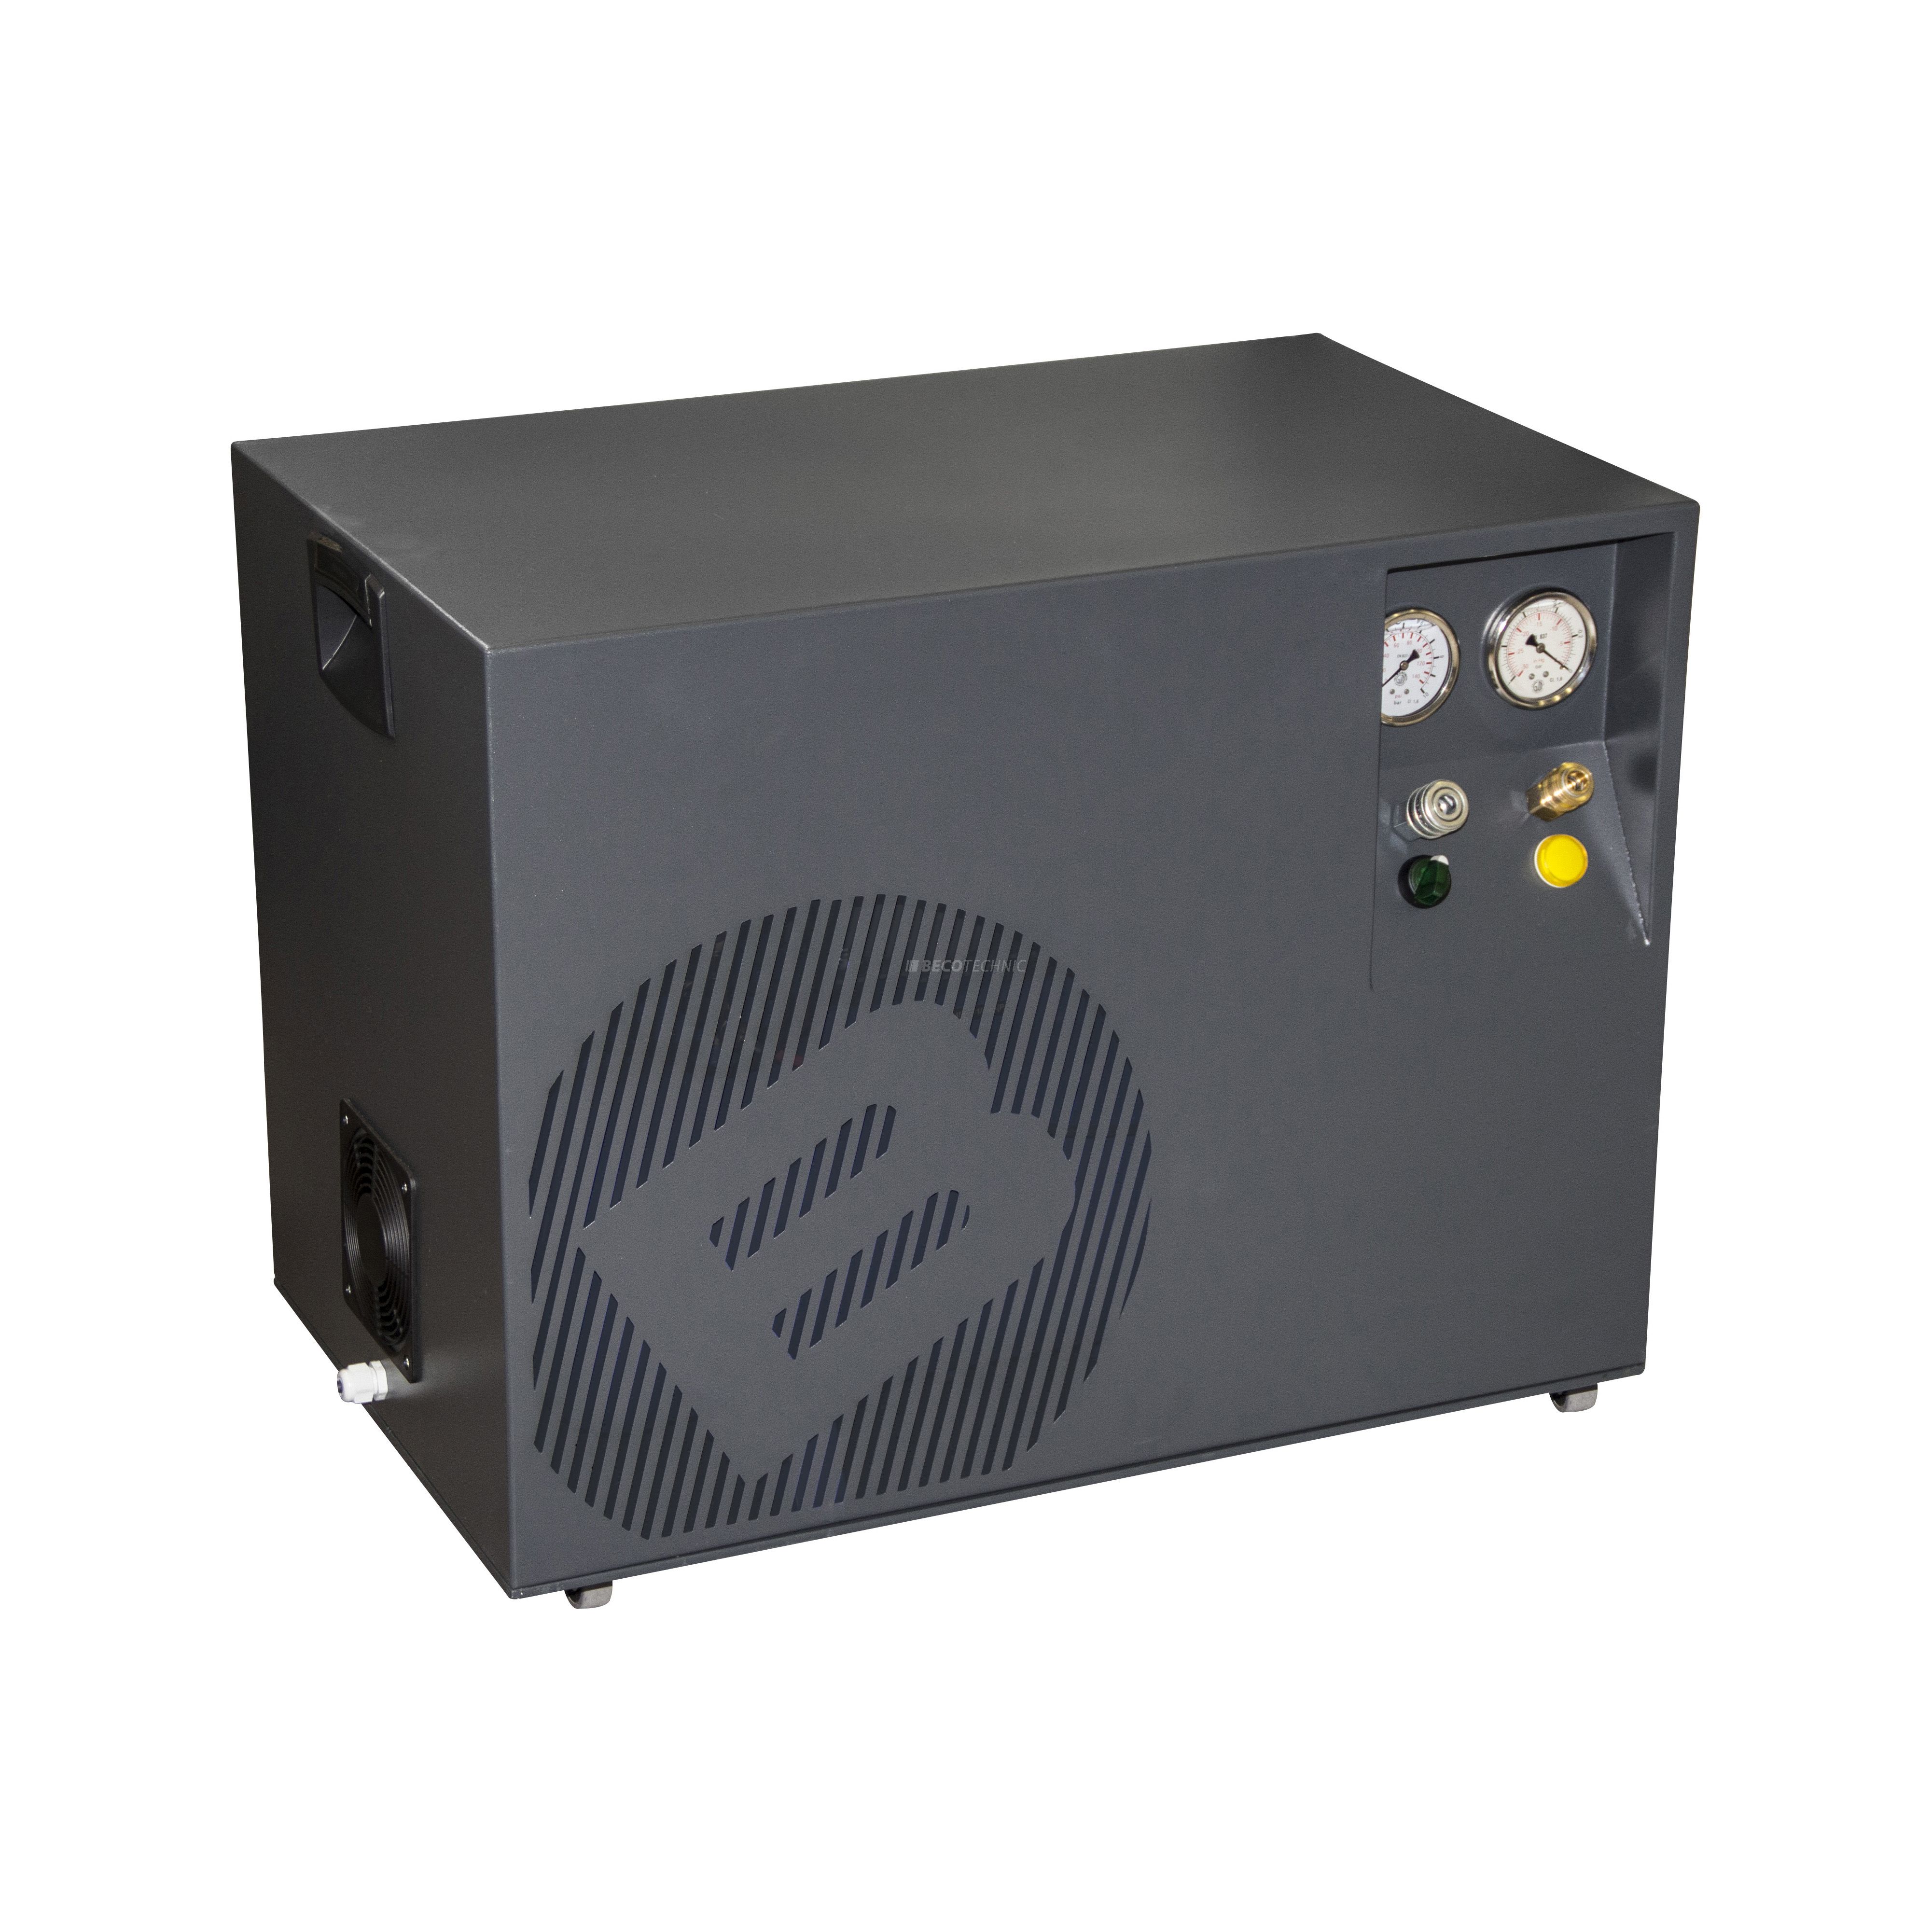 Bergeon 6100-230 Compresseur Combi-vacuum avec sécheur d´air, 8 bar, 2x 14 l, 40 dB